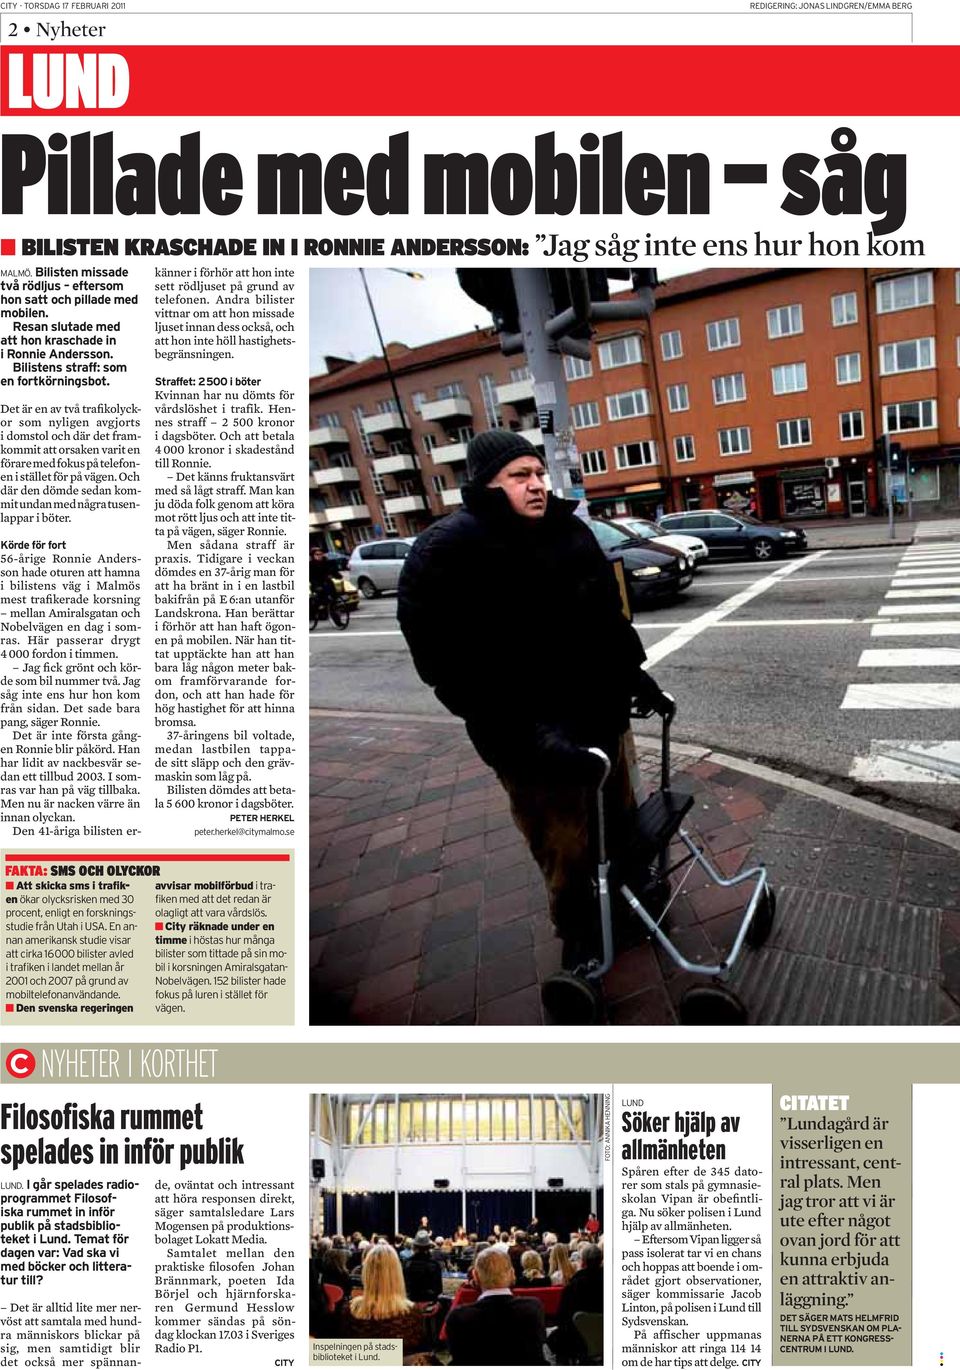 56-årige Ronnie Andersson hade oturen att hamna i bilistens väg i Malmös mest trafikerade korsning mellan Amiralsgatan och Nobelvägen en dag i somras. Här passerar drygt 4 000 fordon i timmen.